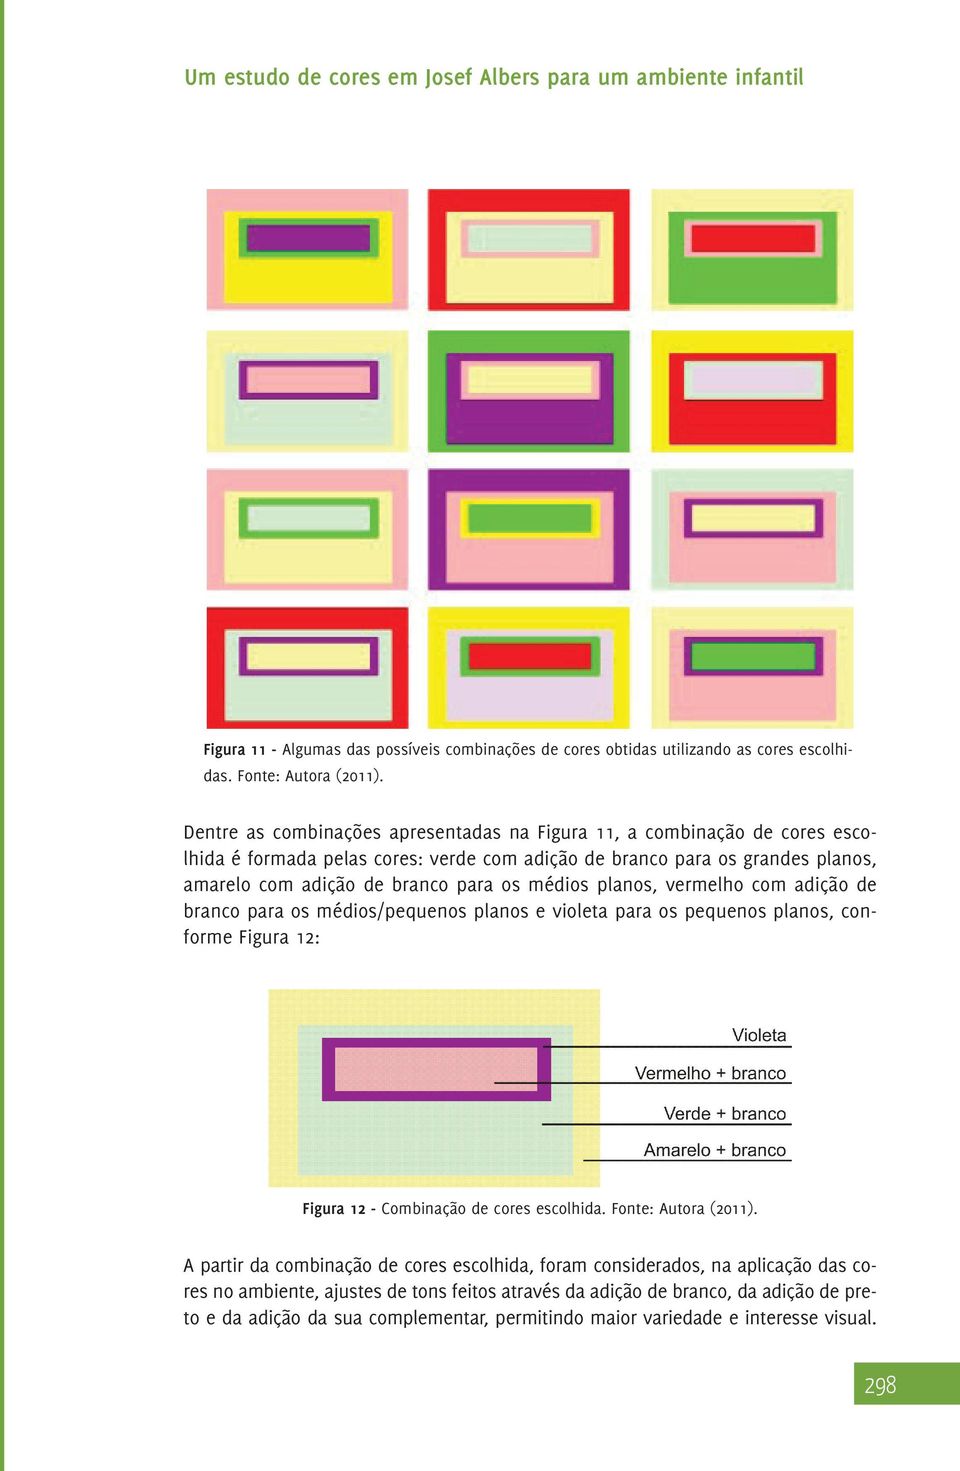 os médios planos, vermelho com adição de branco para os médios/pequenos planos e violeta para os pequenos planos, conforme Figura 12: Figura 12 - Combinação de cores escolhida.